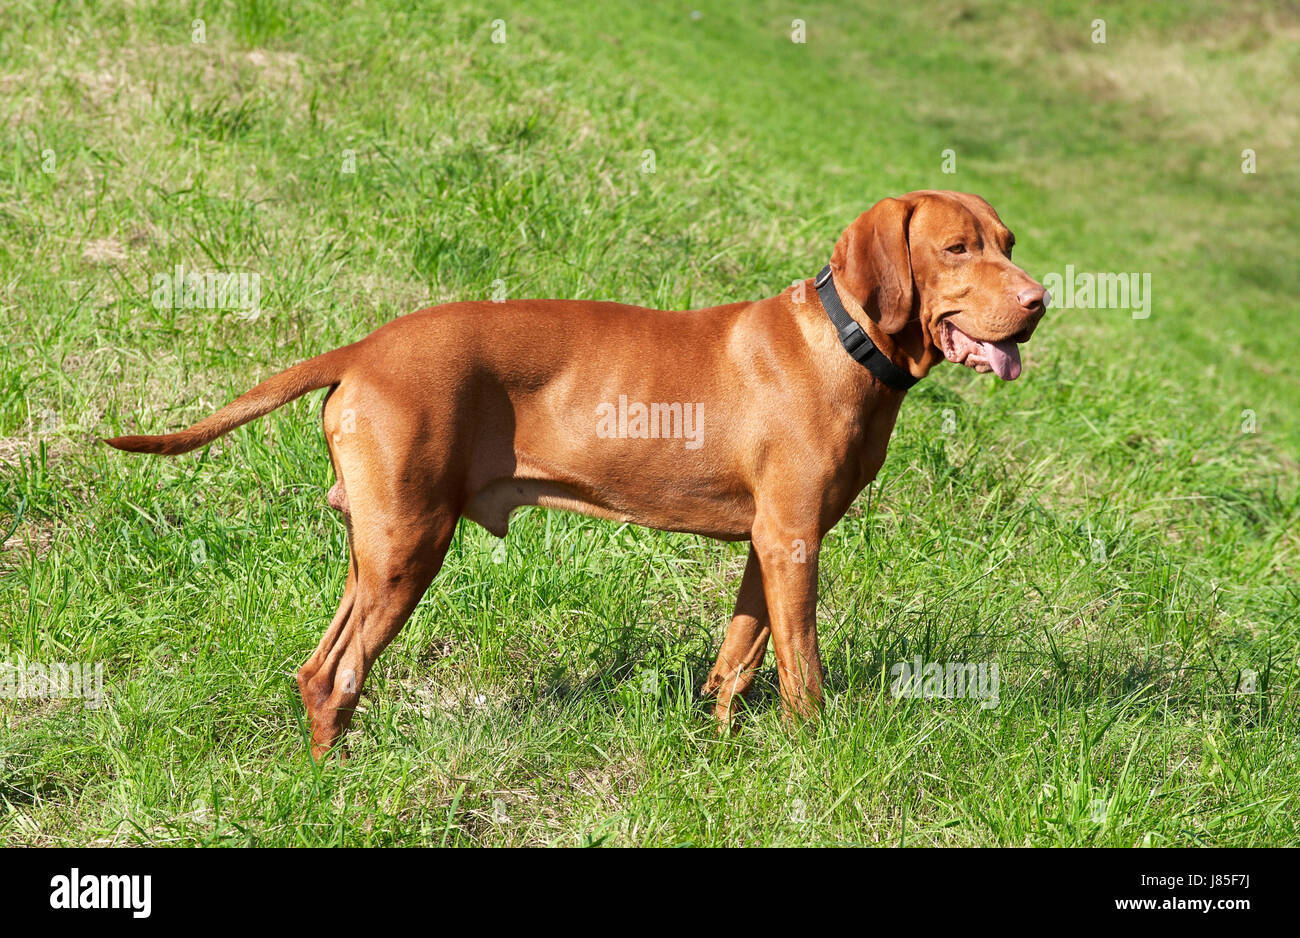 Tiere Jäger Hund Lebensraum Ungarn Natur in der Nähe schöne beauteously  schön Stockfotografie - Alamy